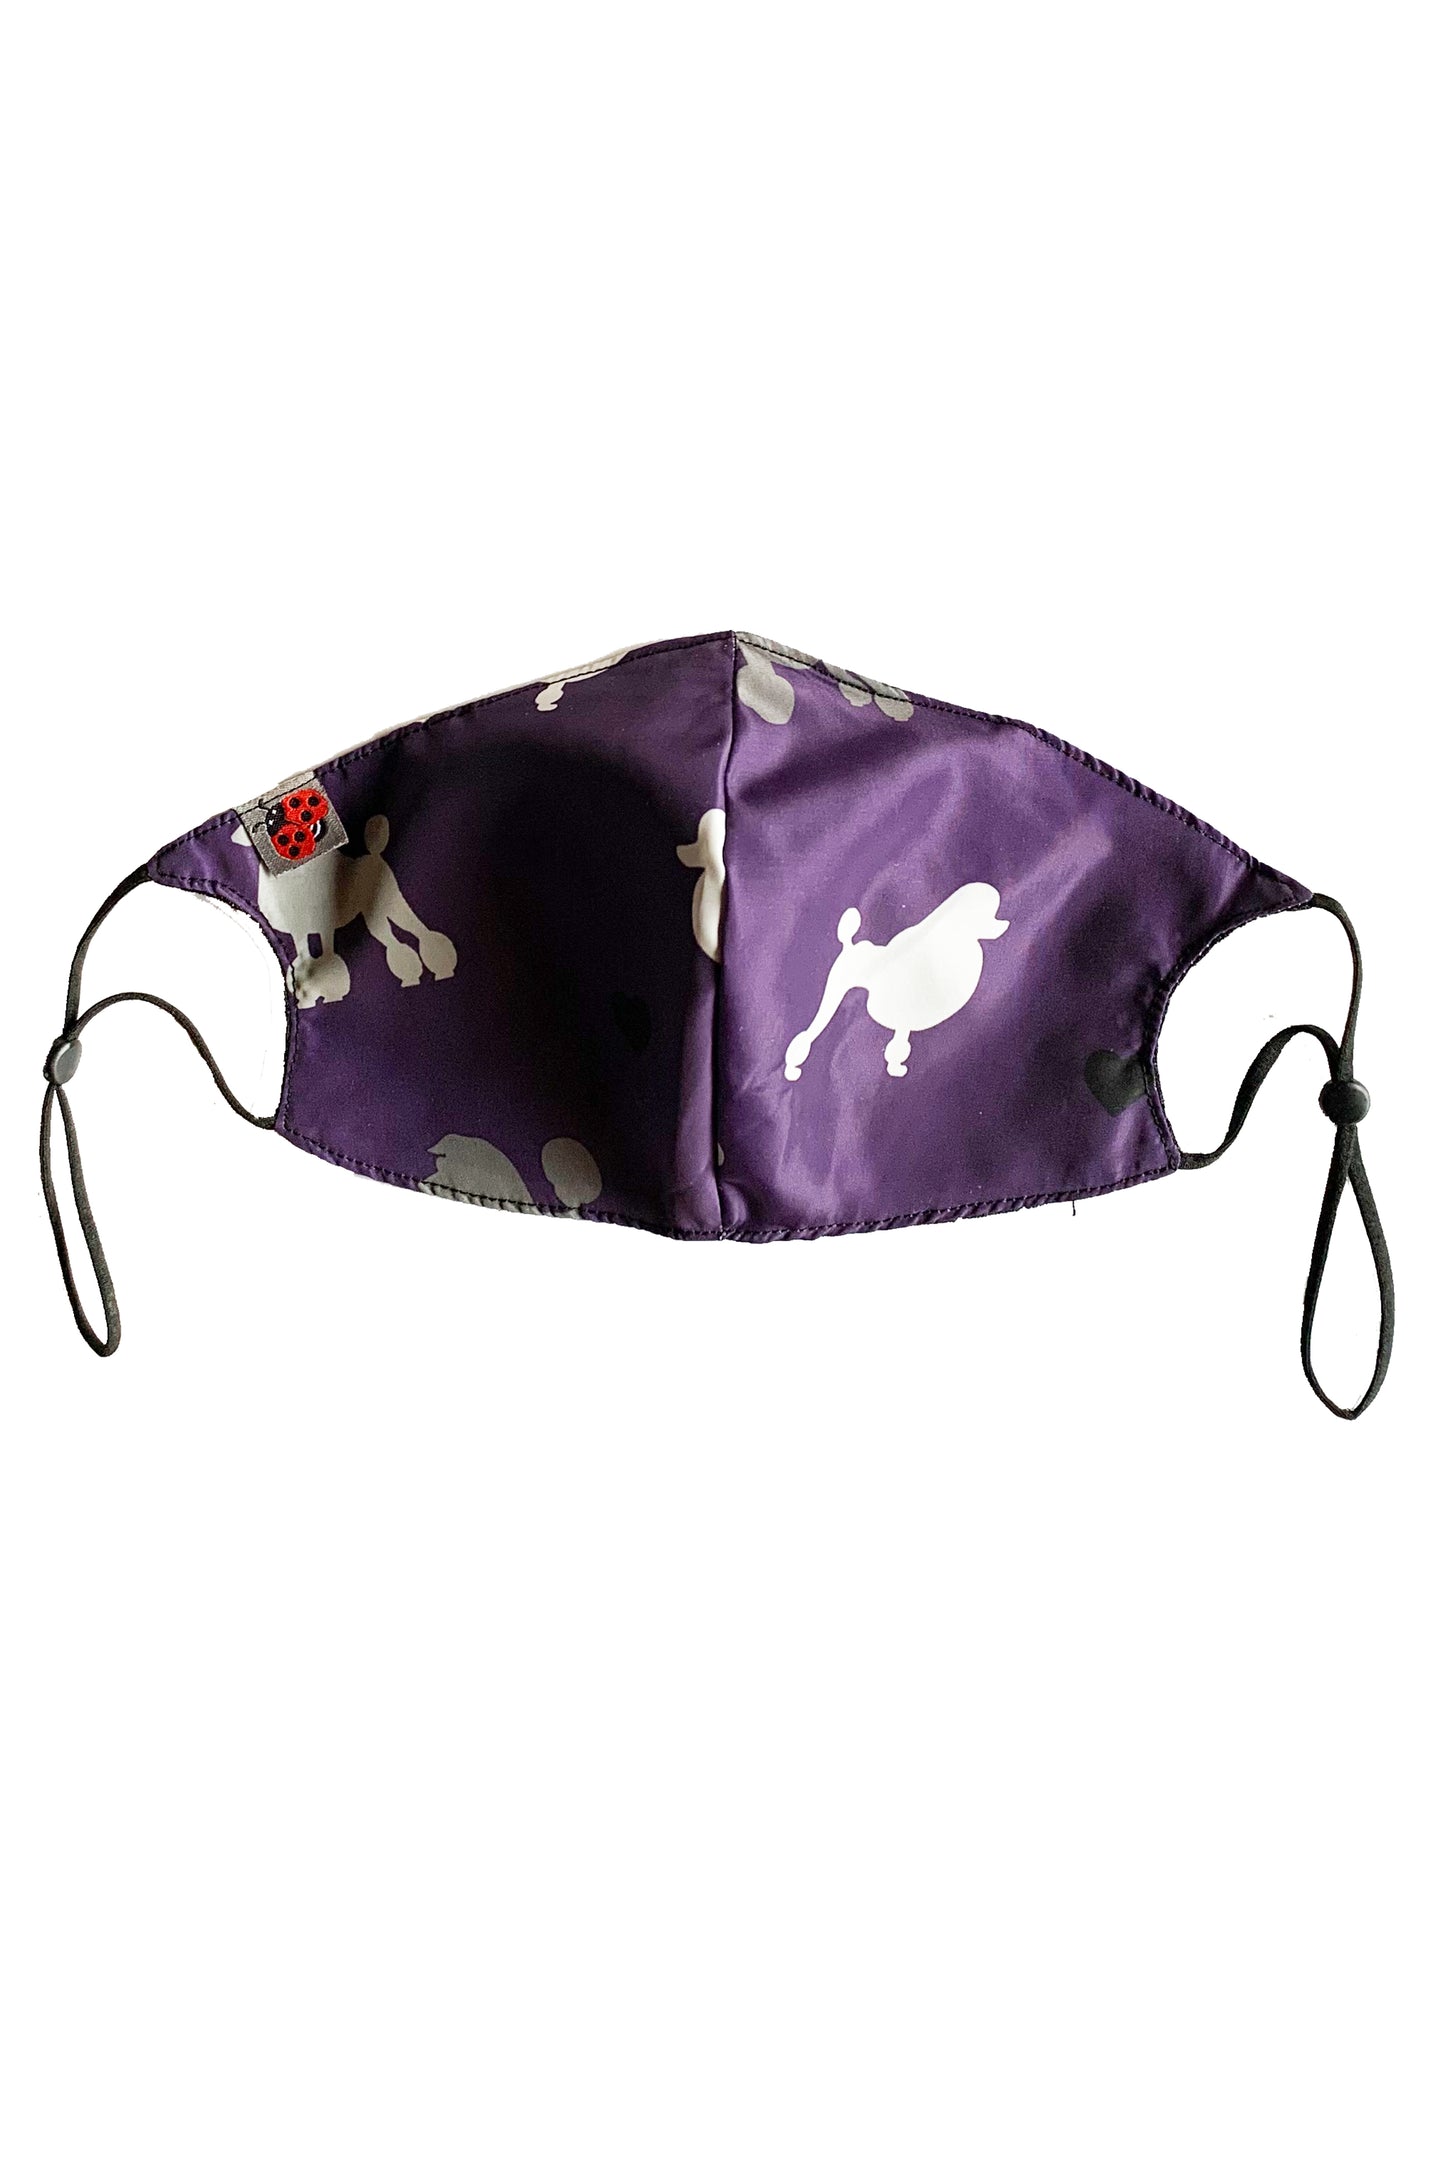 Purple Poodle Masks-2 Masks - 29